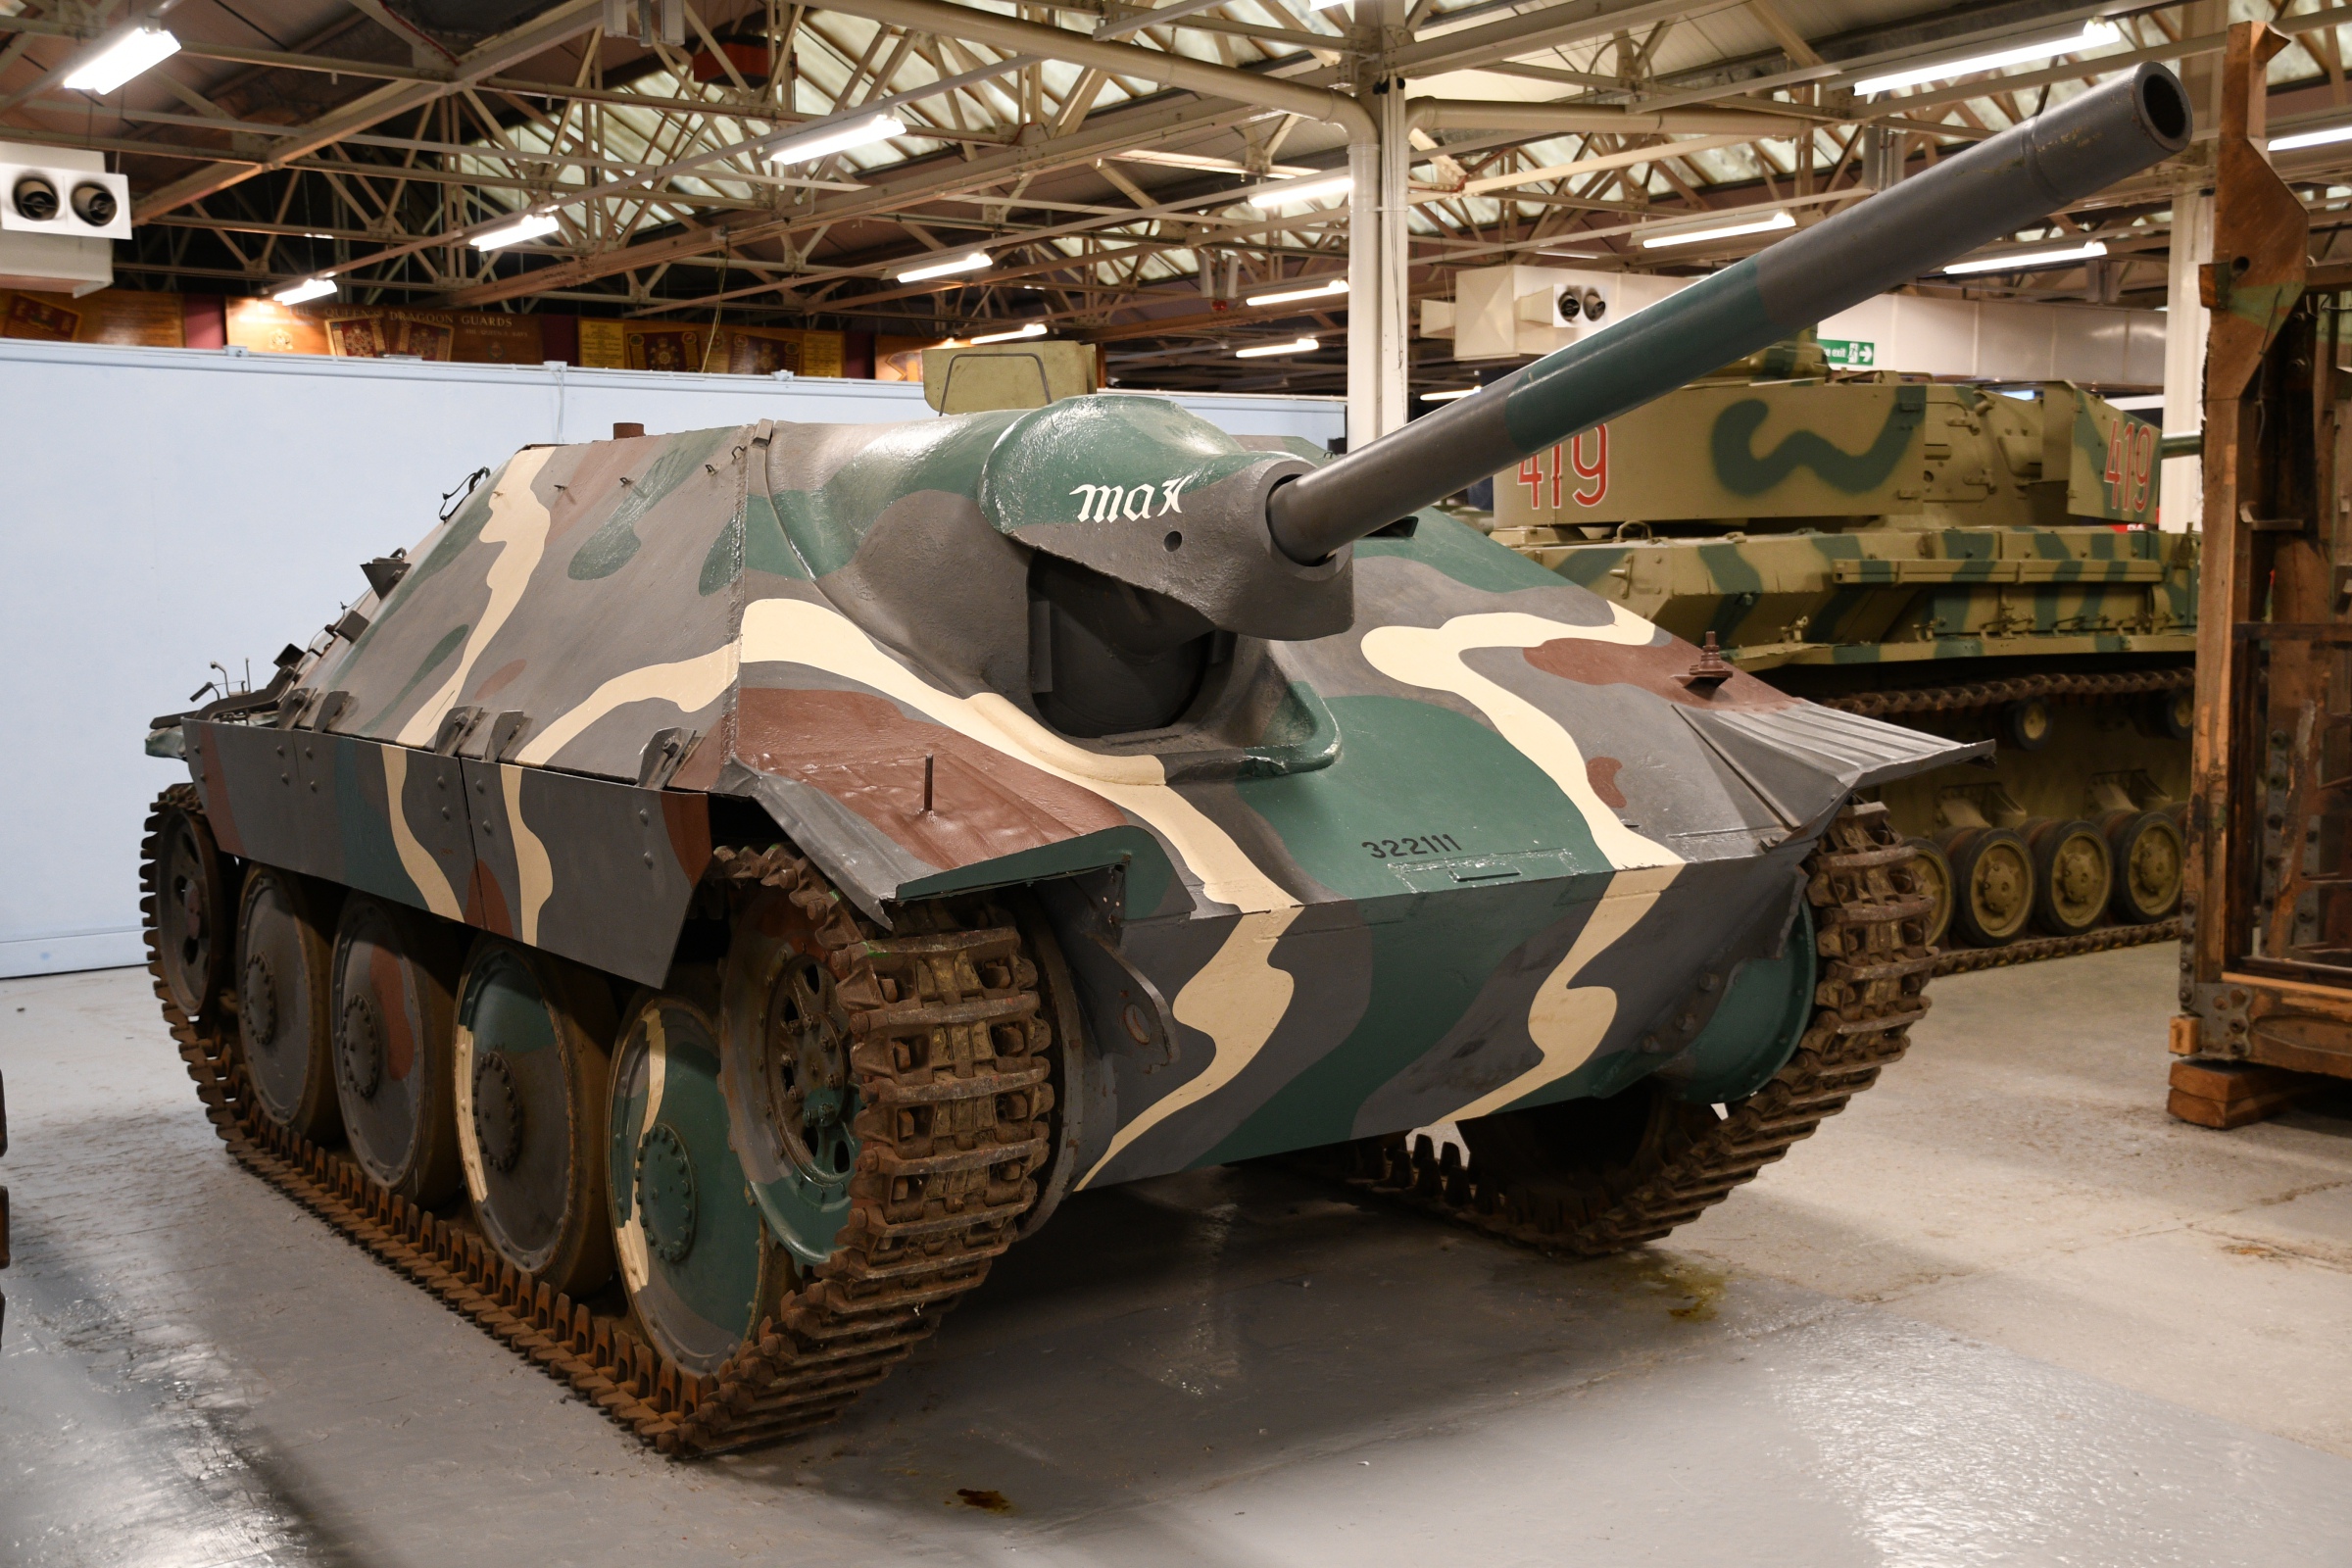 Jagdpanzer 38(t)